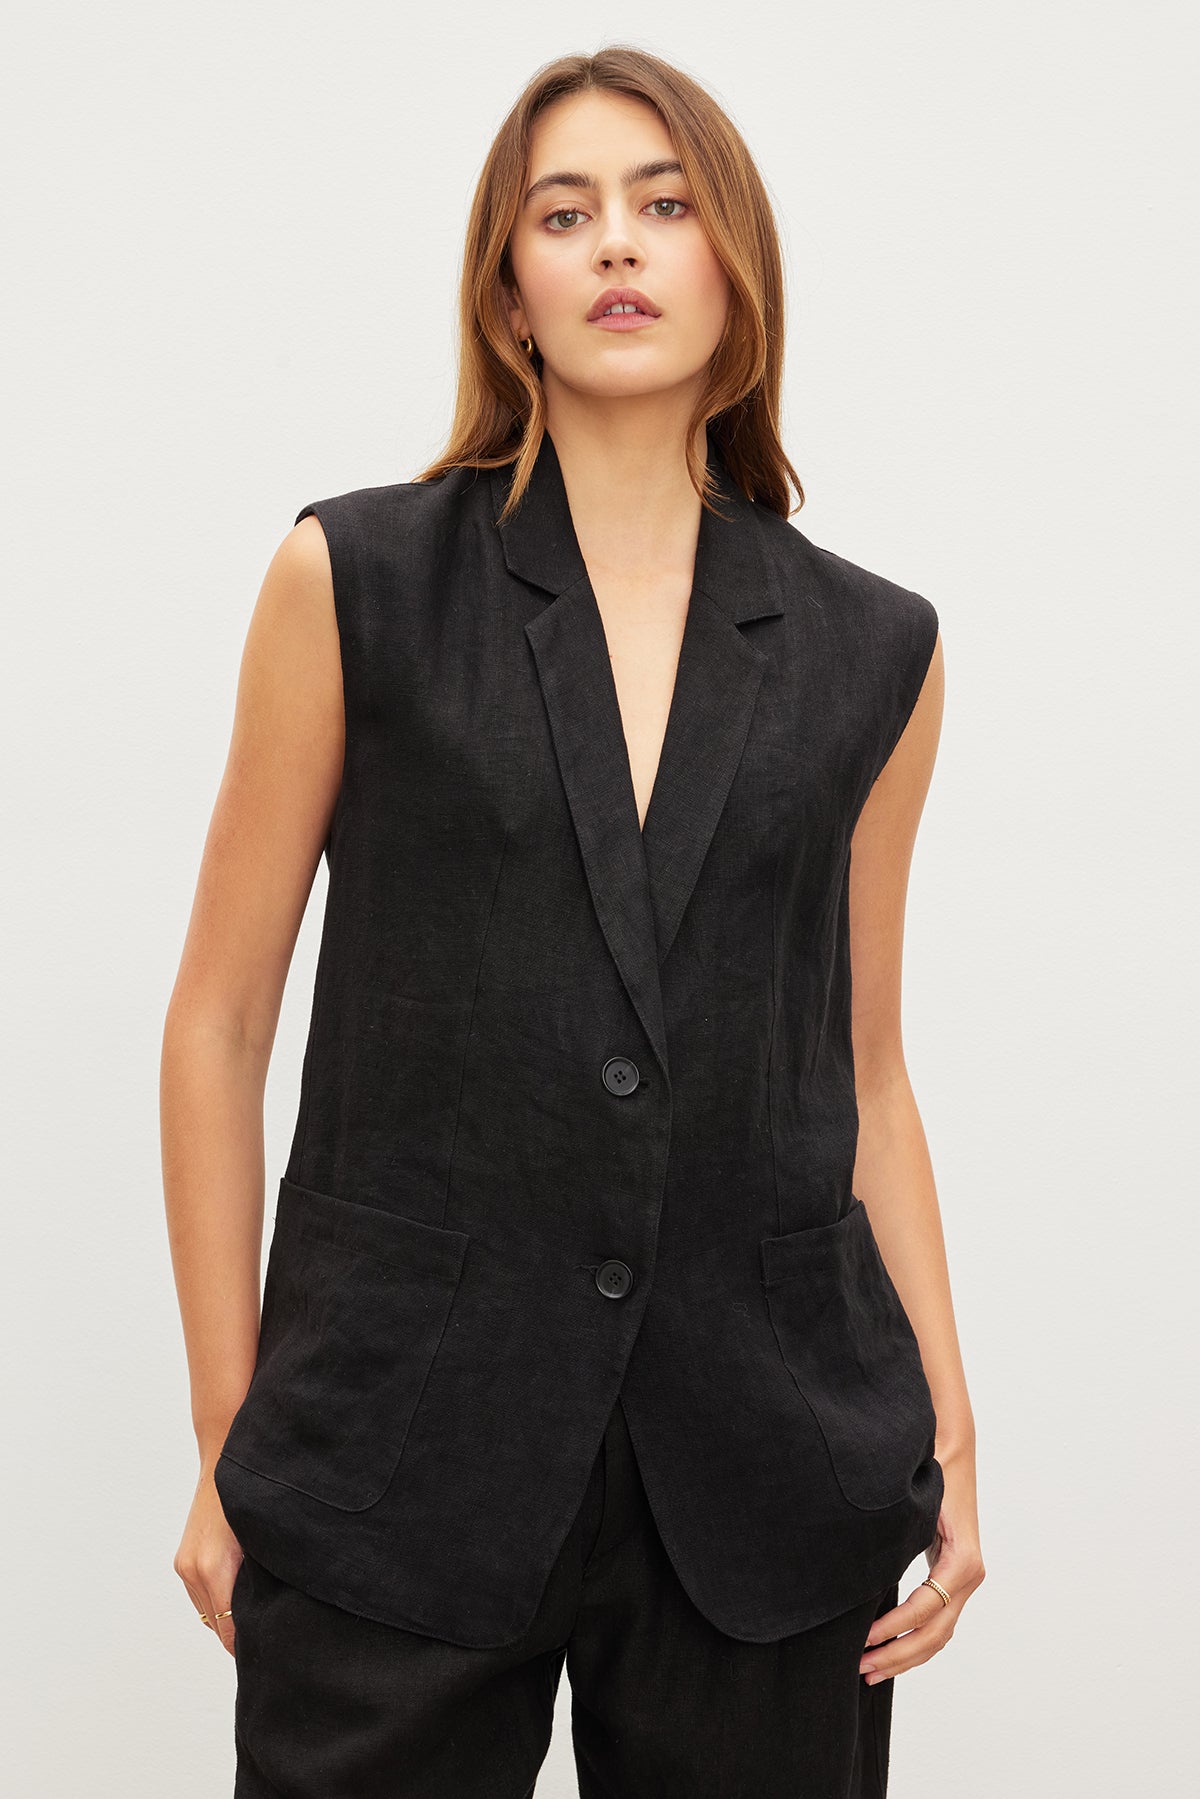 Oversized Velvet by Graham & Spencer black linen sleeveless vest.-35982575337665